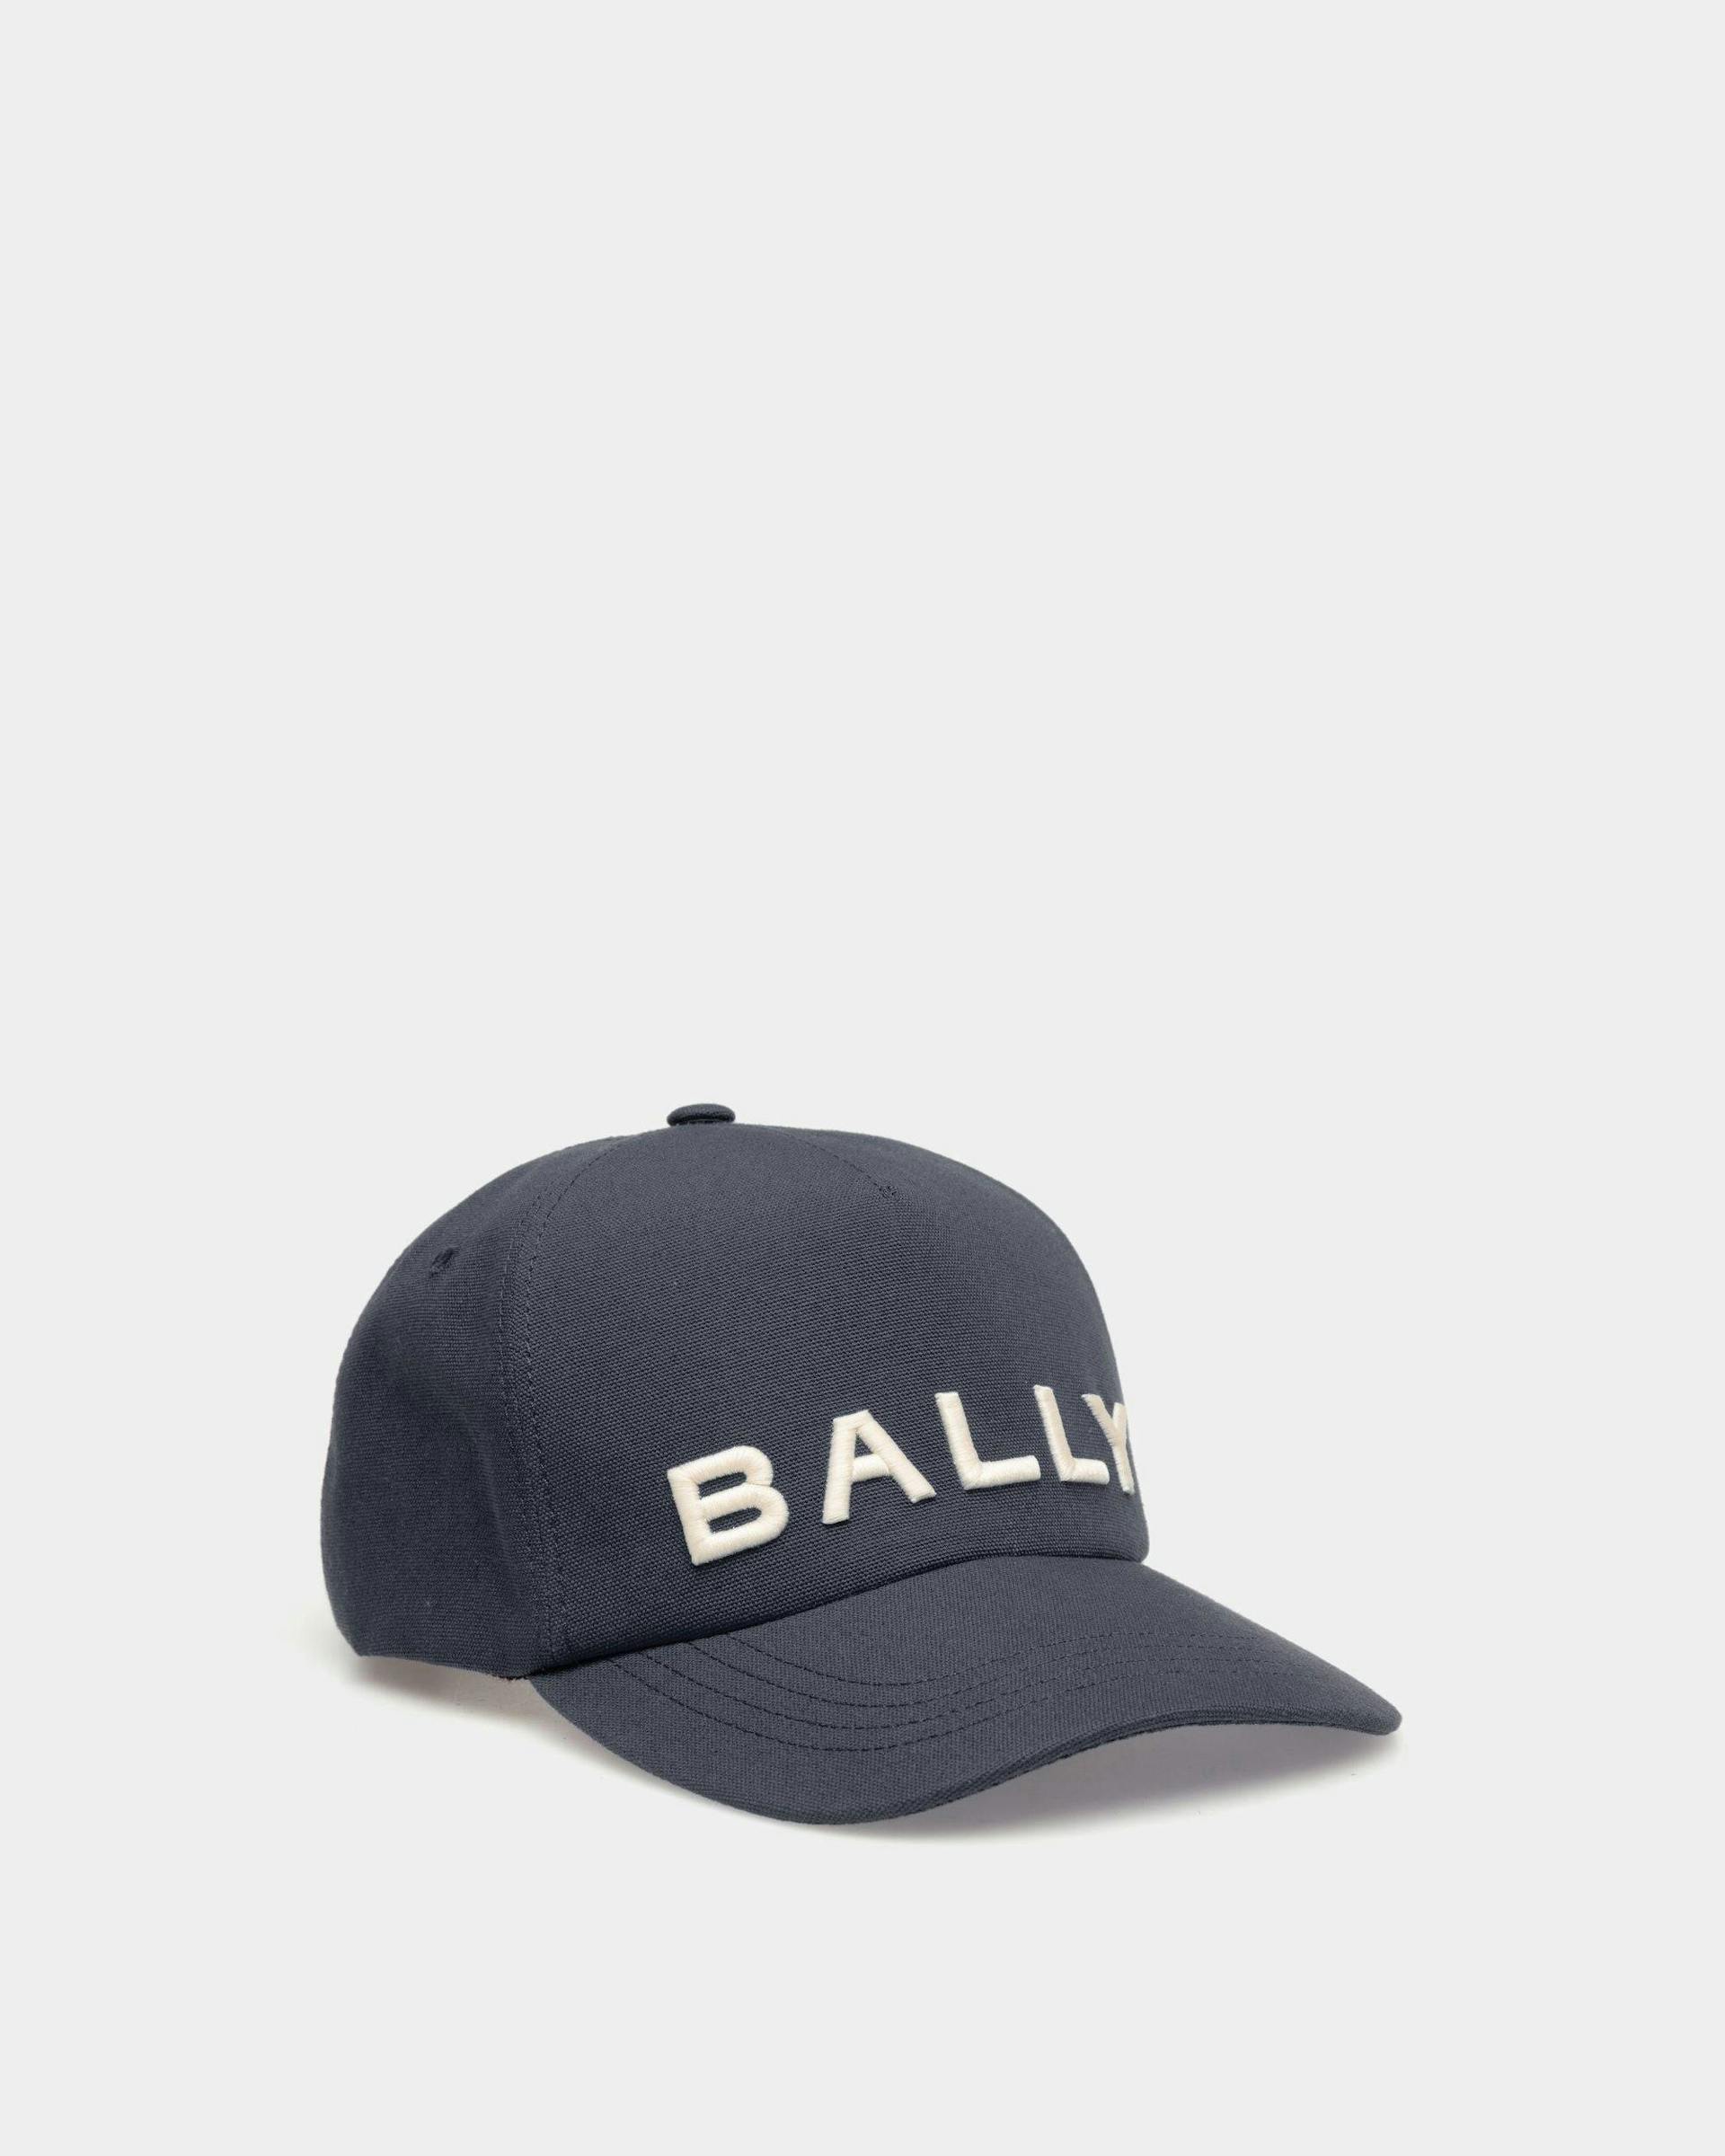 Baseballmütze mit Logostickerei Aus Baumwolle in Mitternachtsblau - Herren - Bally - 01